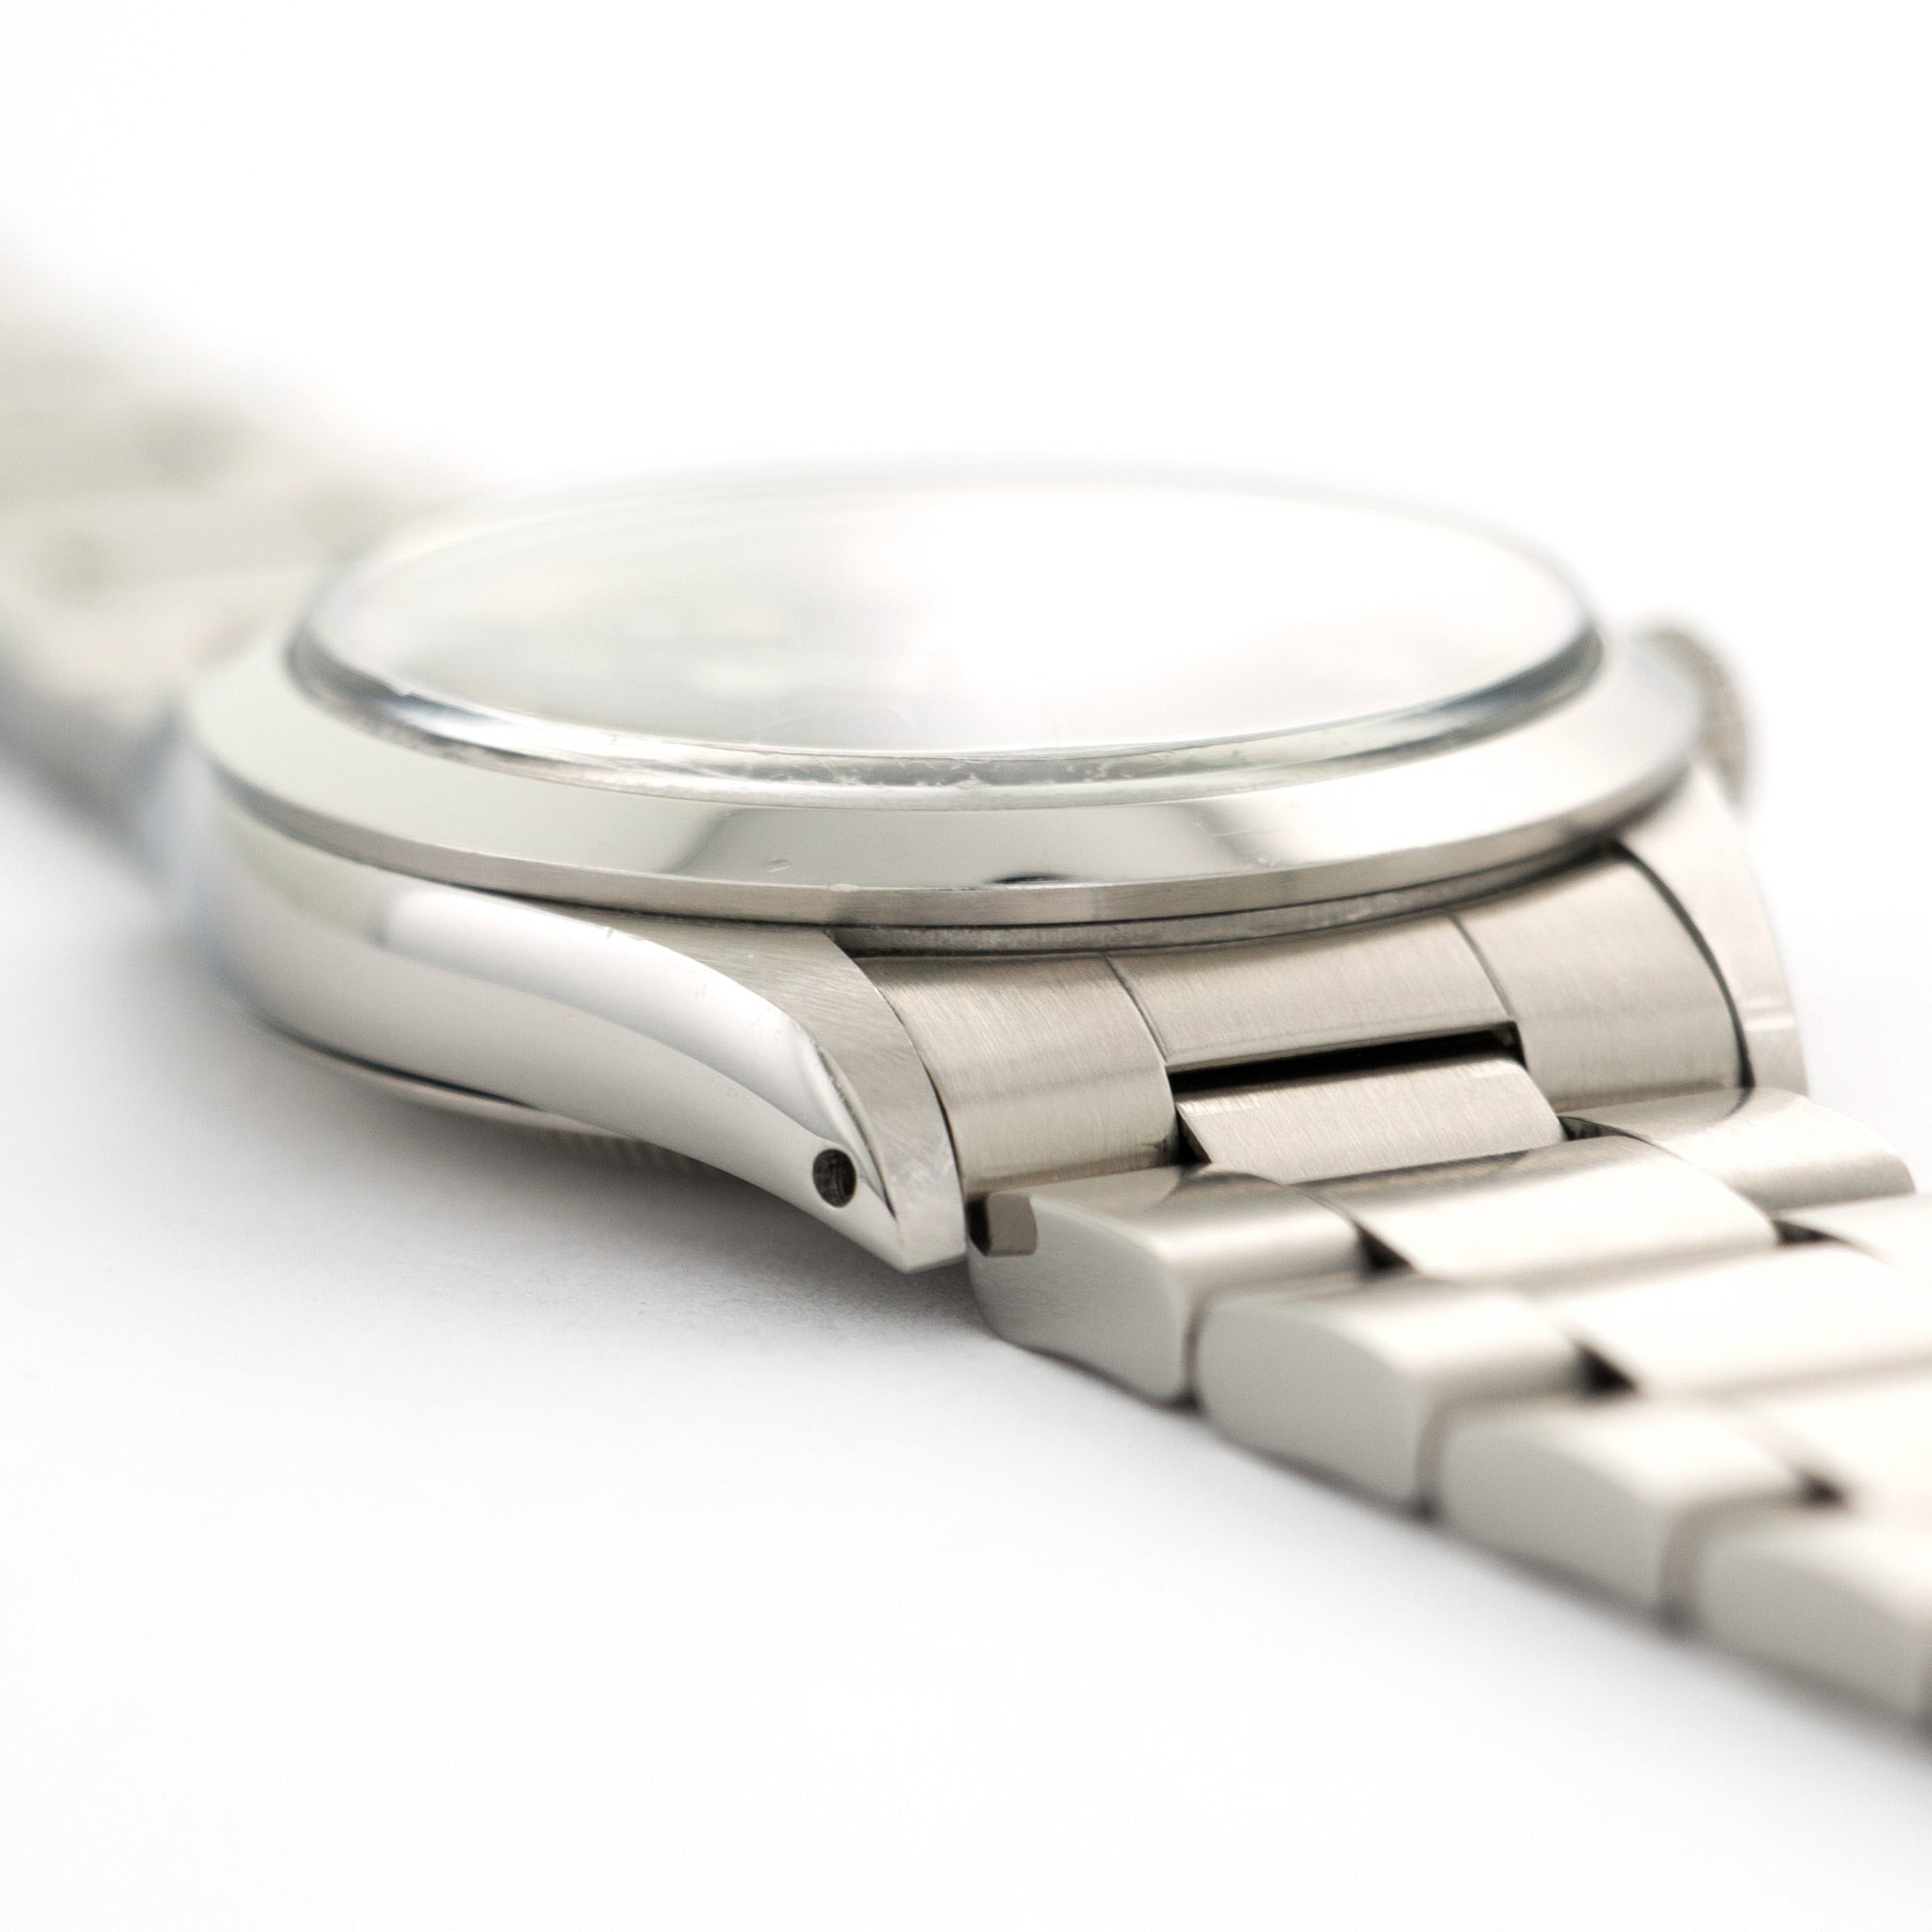 Rolex - Rolex Explorer Watch Ref. 1016, Circa 1974 - The Keystone Watches